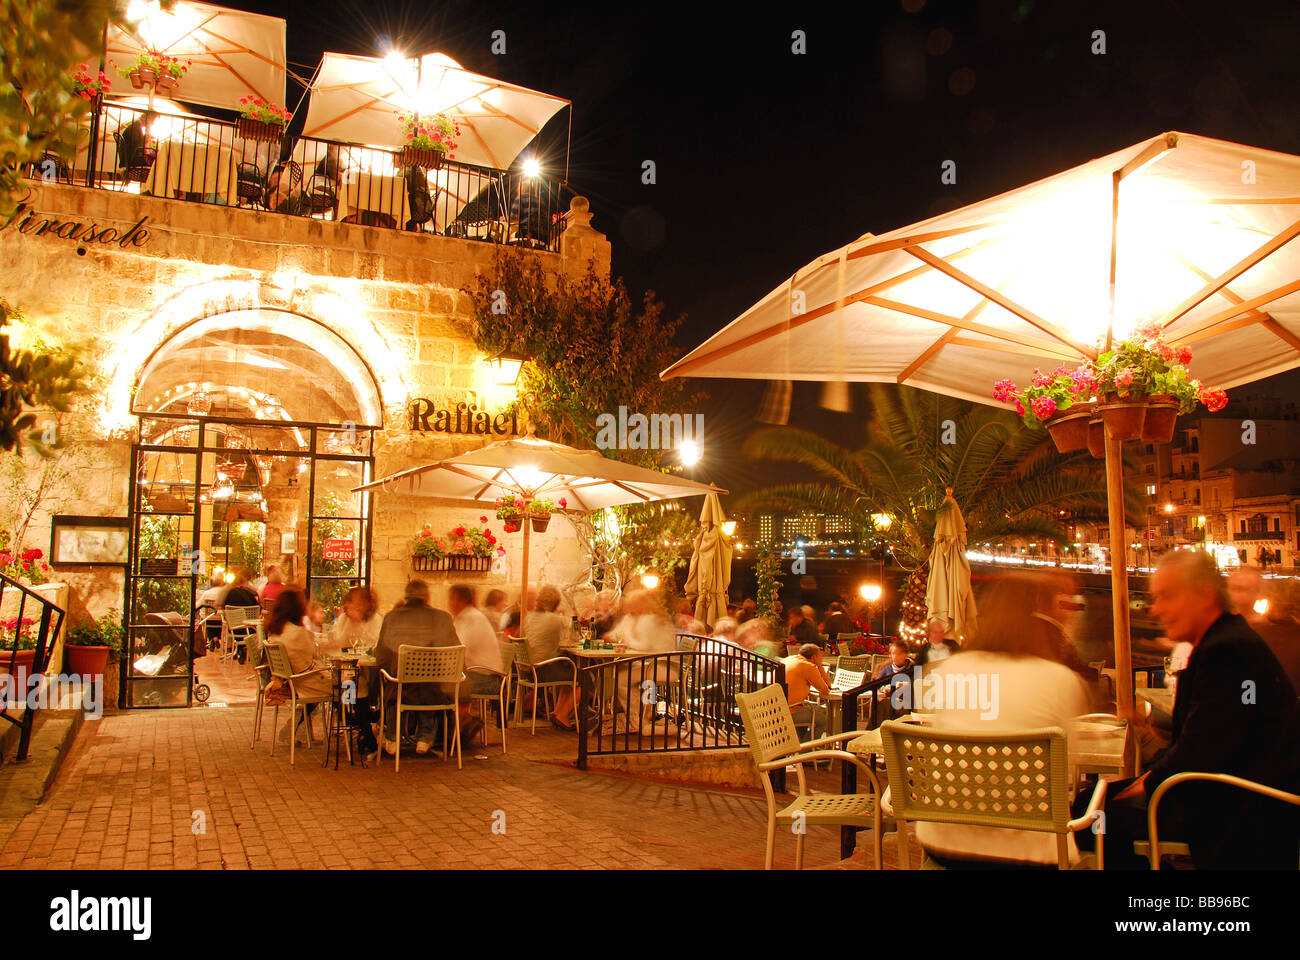 MALTA. Raffael Restaurant and bar at Spinola Bay in St Julian's. 2009. Stock Photo